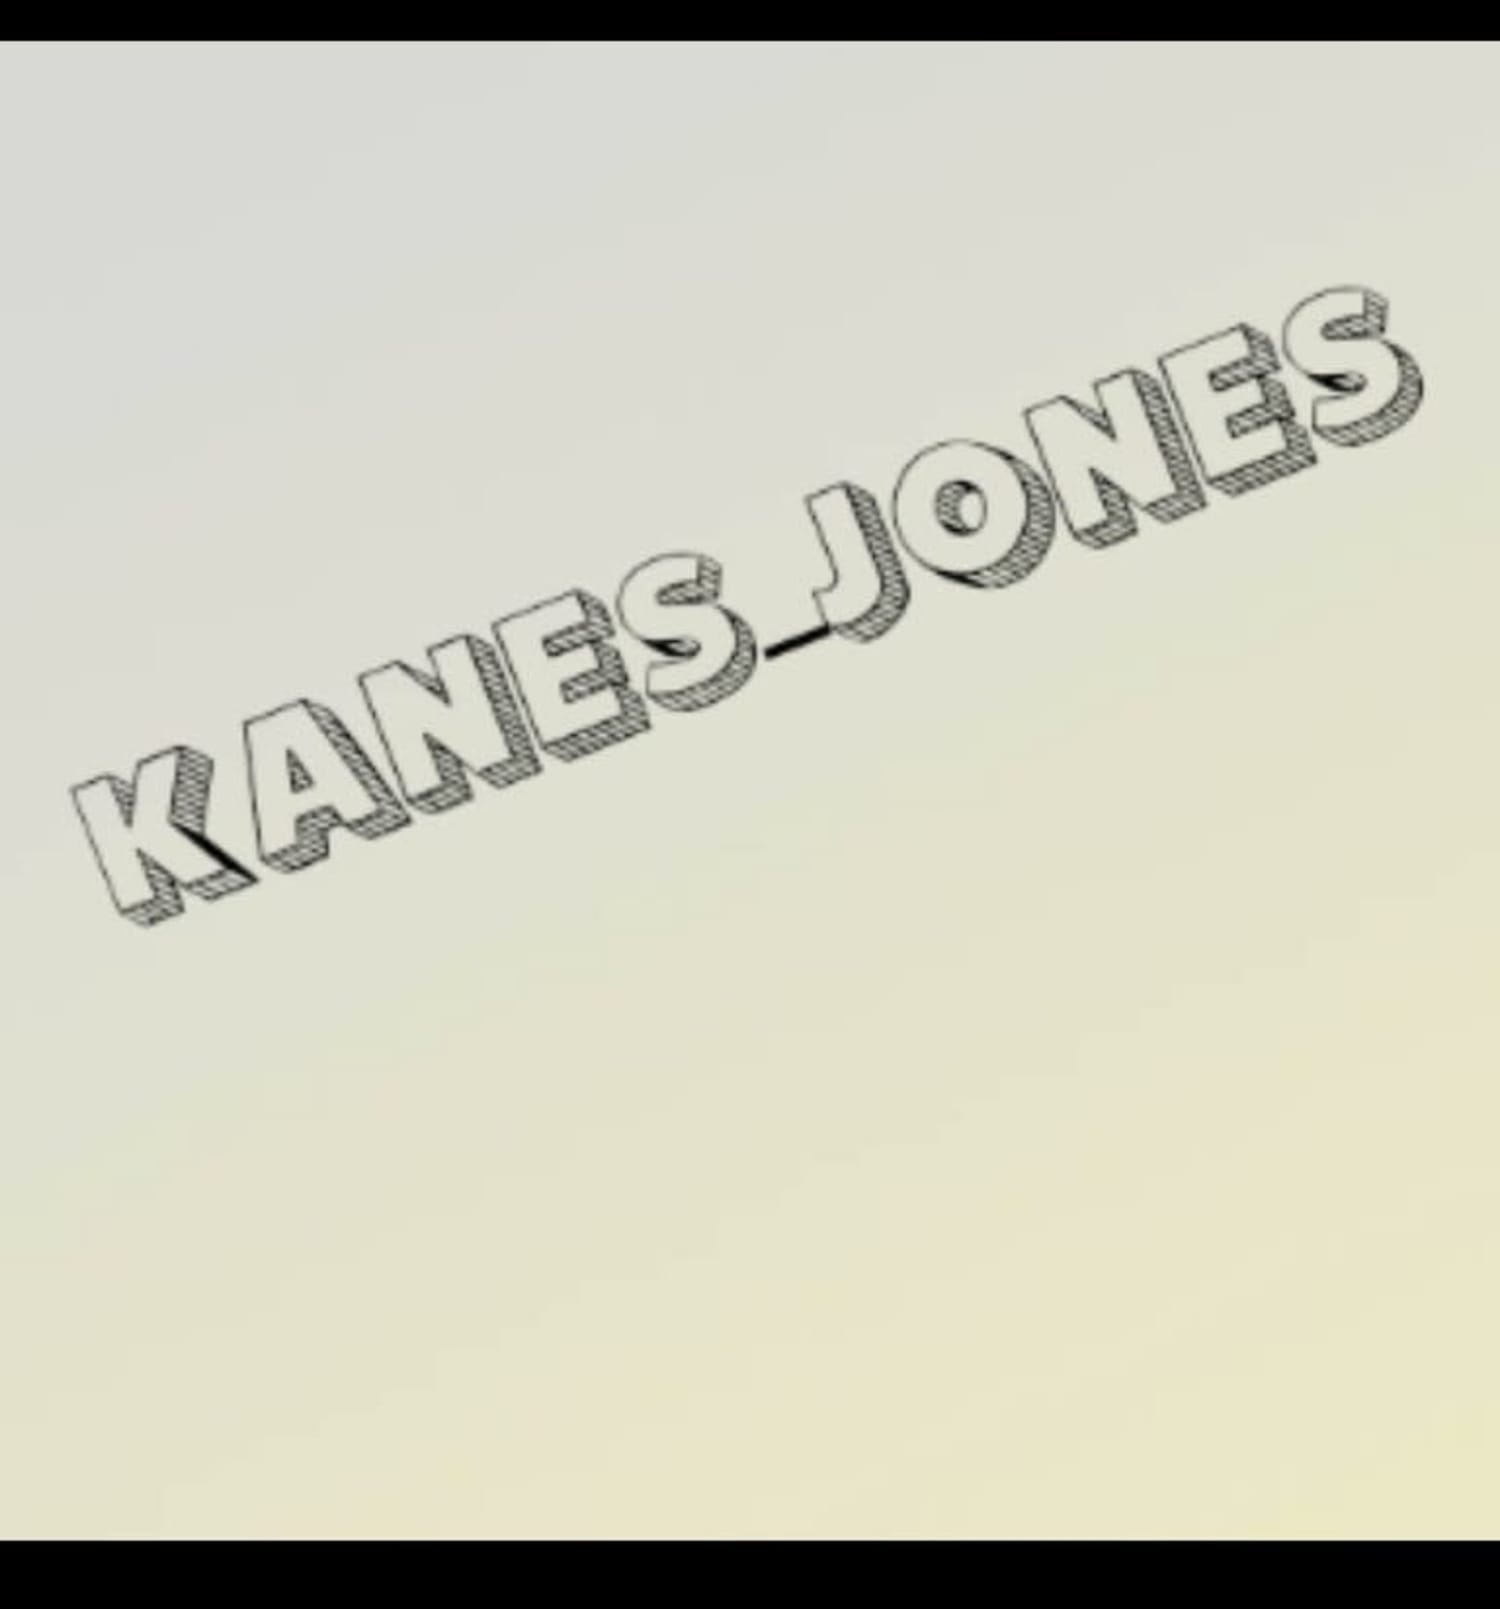 Kanes Jones